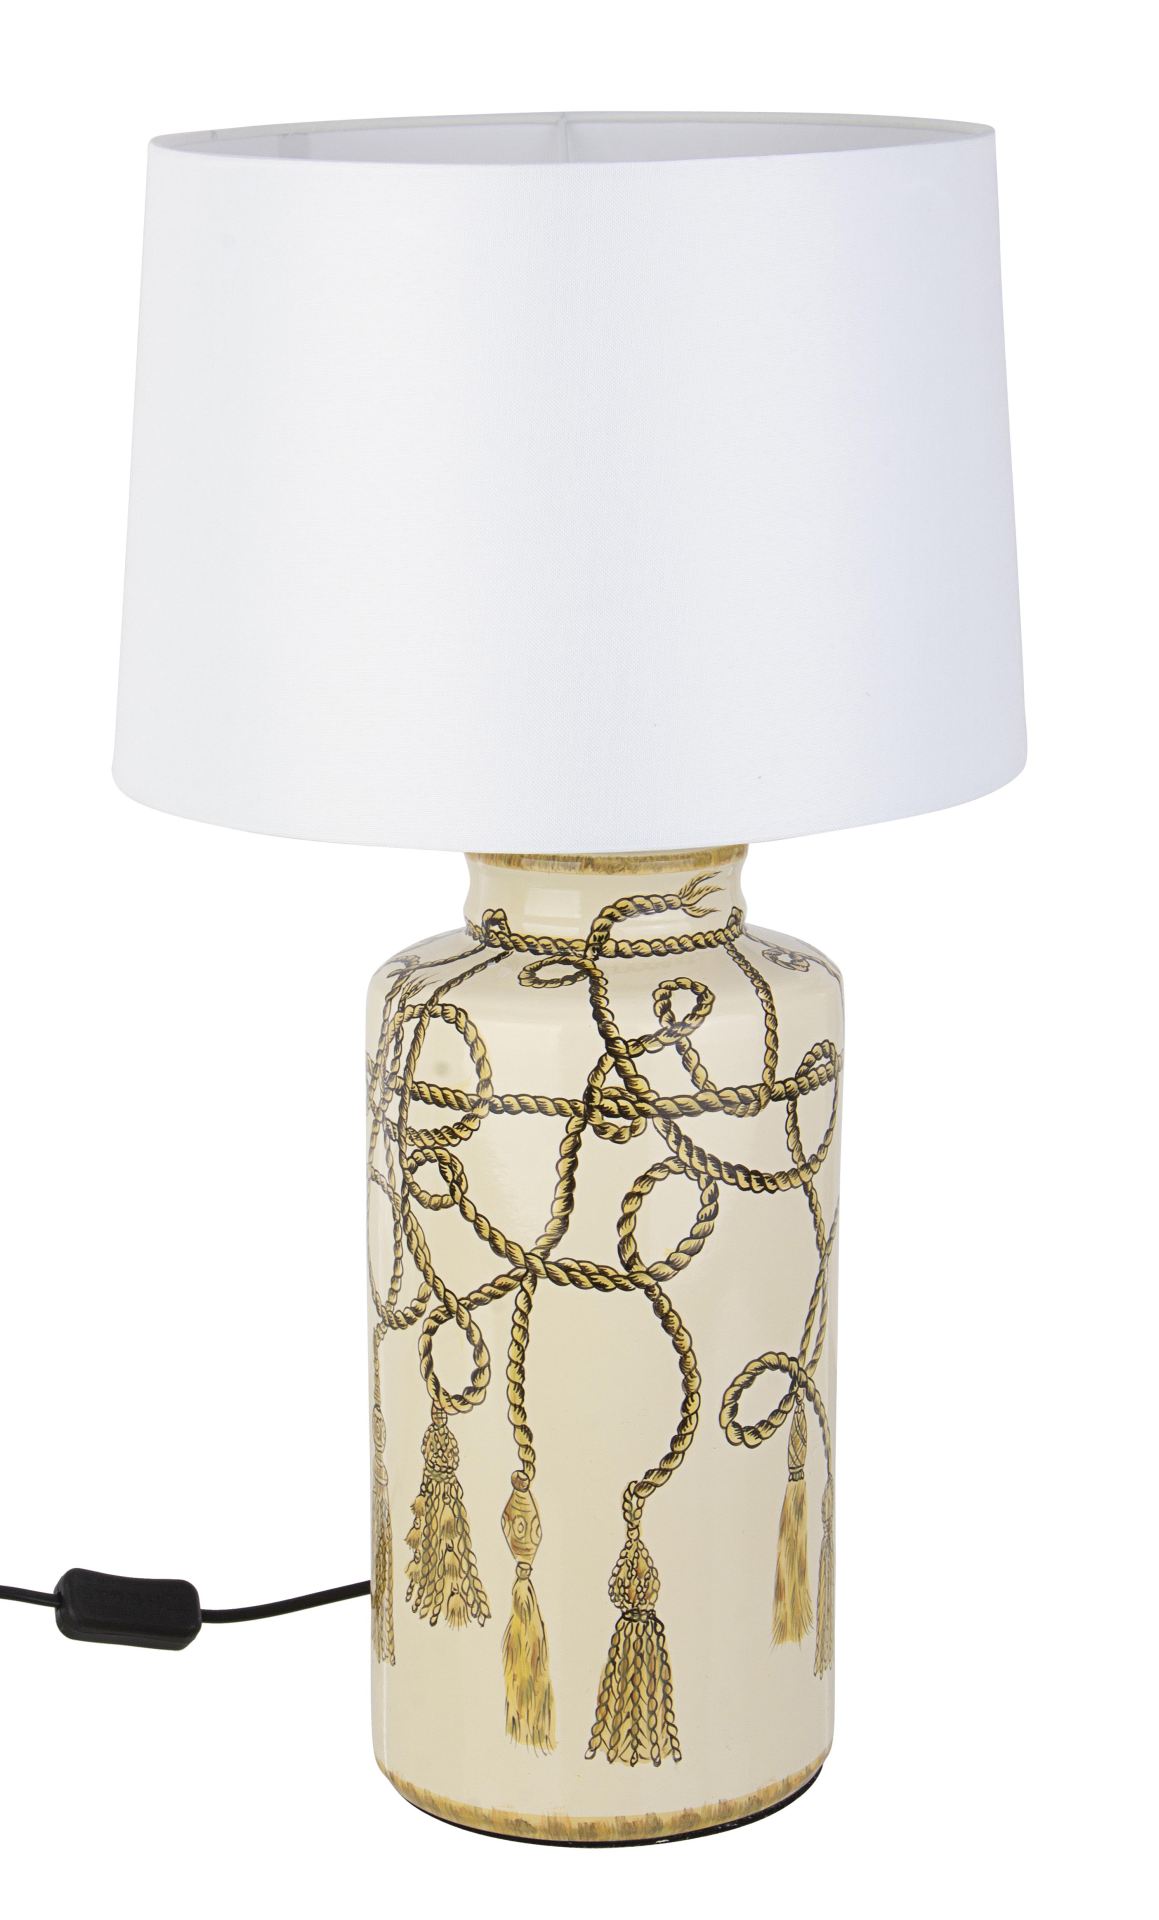 Die Tischleuchte Nappa überzeugt mit ihrem klassischen Design. Gefertigt wurde sie aus Porzellan, welches einen goldenen Farbton besitzt. Die Lampenschirme ist aus Polyester und hat eine weiße Farbe. Die Lampe besitzt eine Höhe von 63 cm.